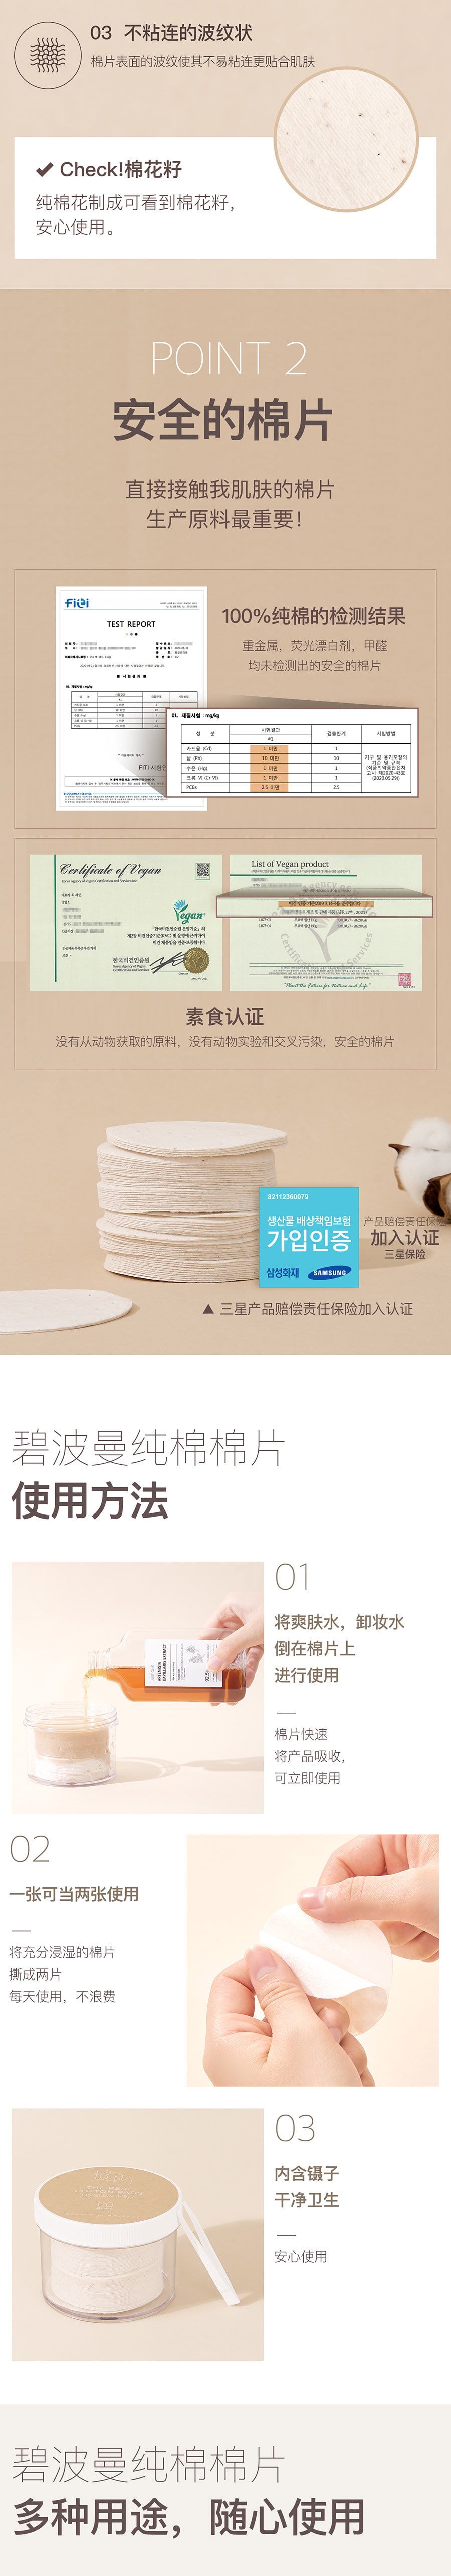 韩国BOM纯棉棉片 湿敷棉  100%无荧光剂纯棉材质 60片